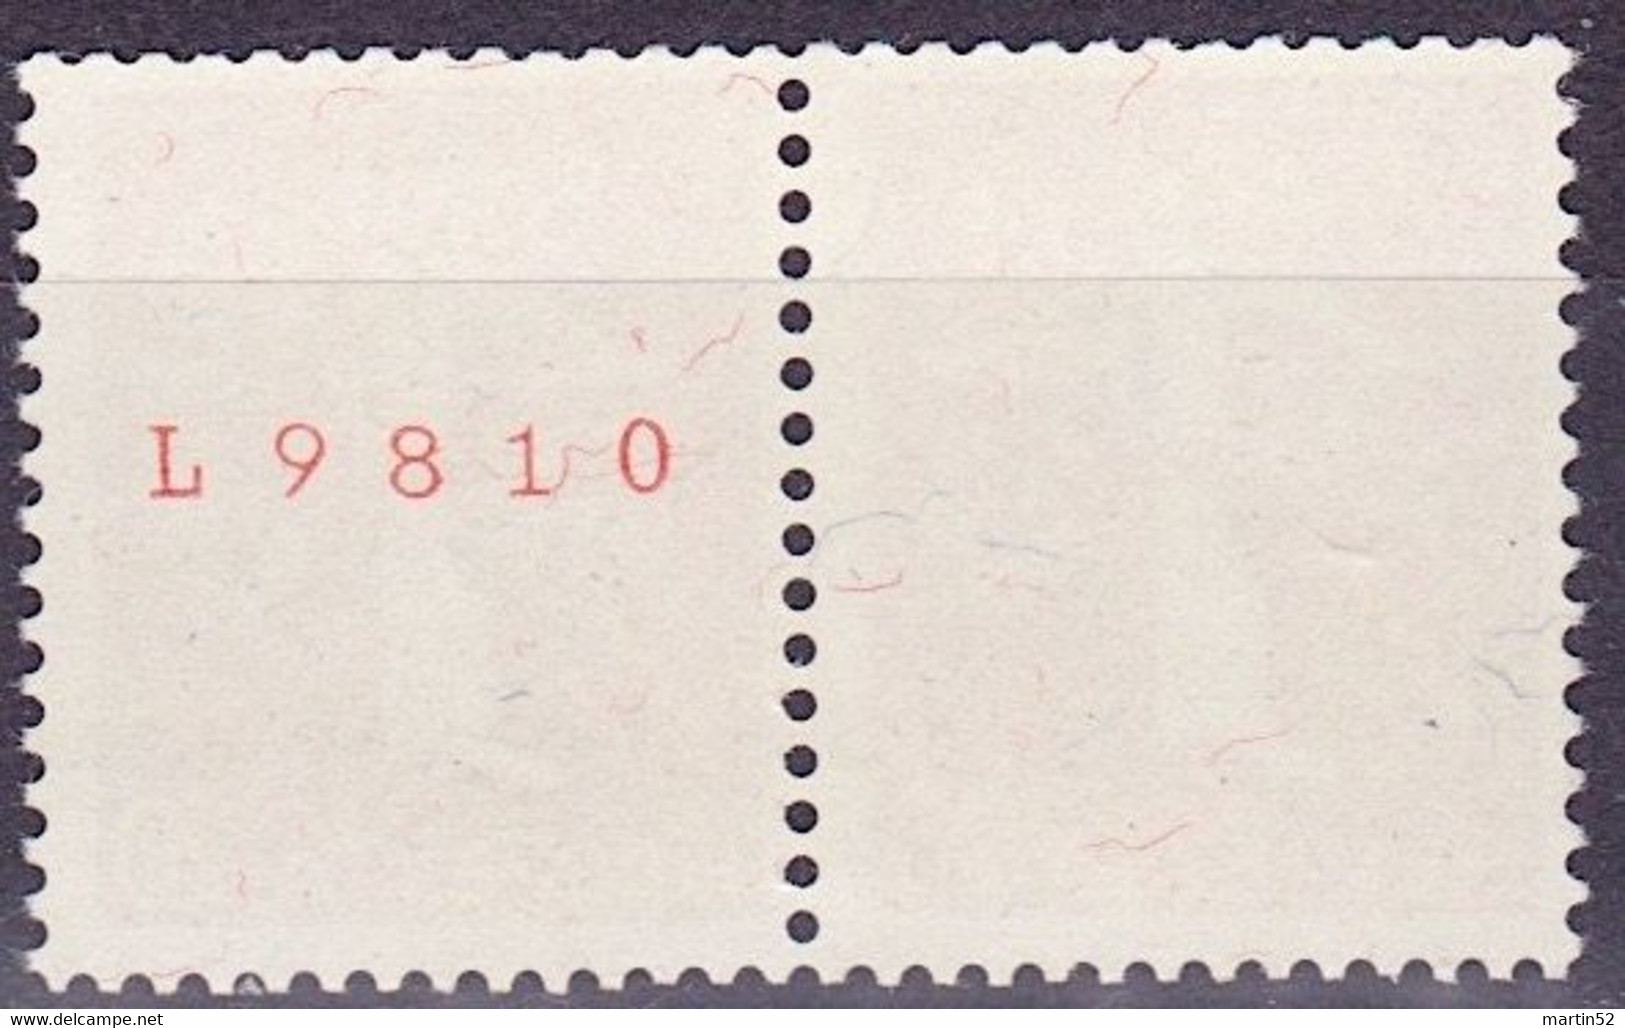 Schweiz Suisse 1939: Zusammendruck Se-tenant Zu Z27e Mi W21 ** Mit Nr. Avec N° L9810 Postfrisch MNH (Zumstein CHF 30.00) - Franqueo